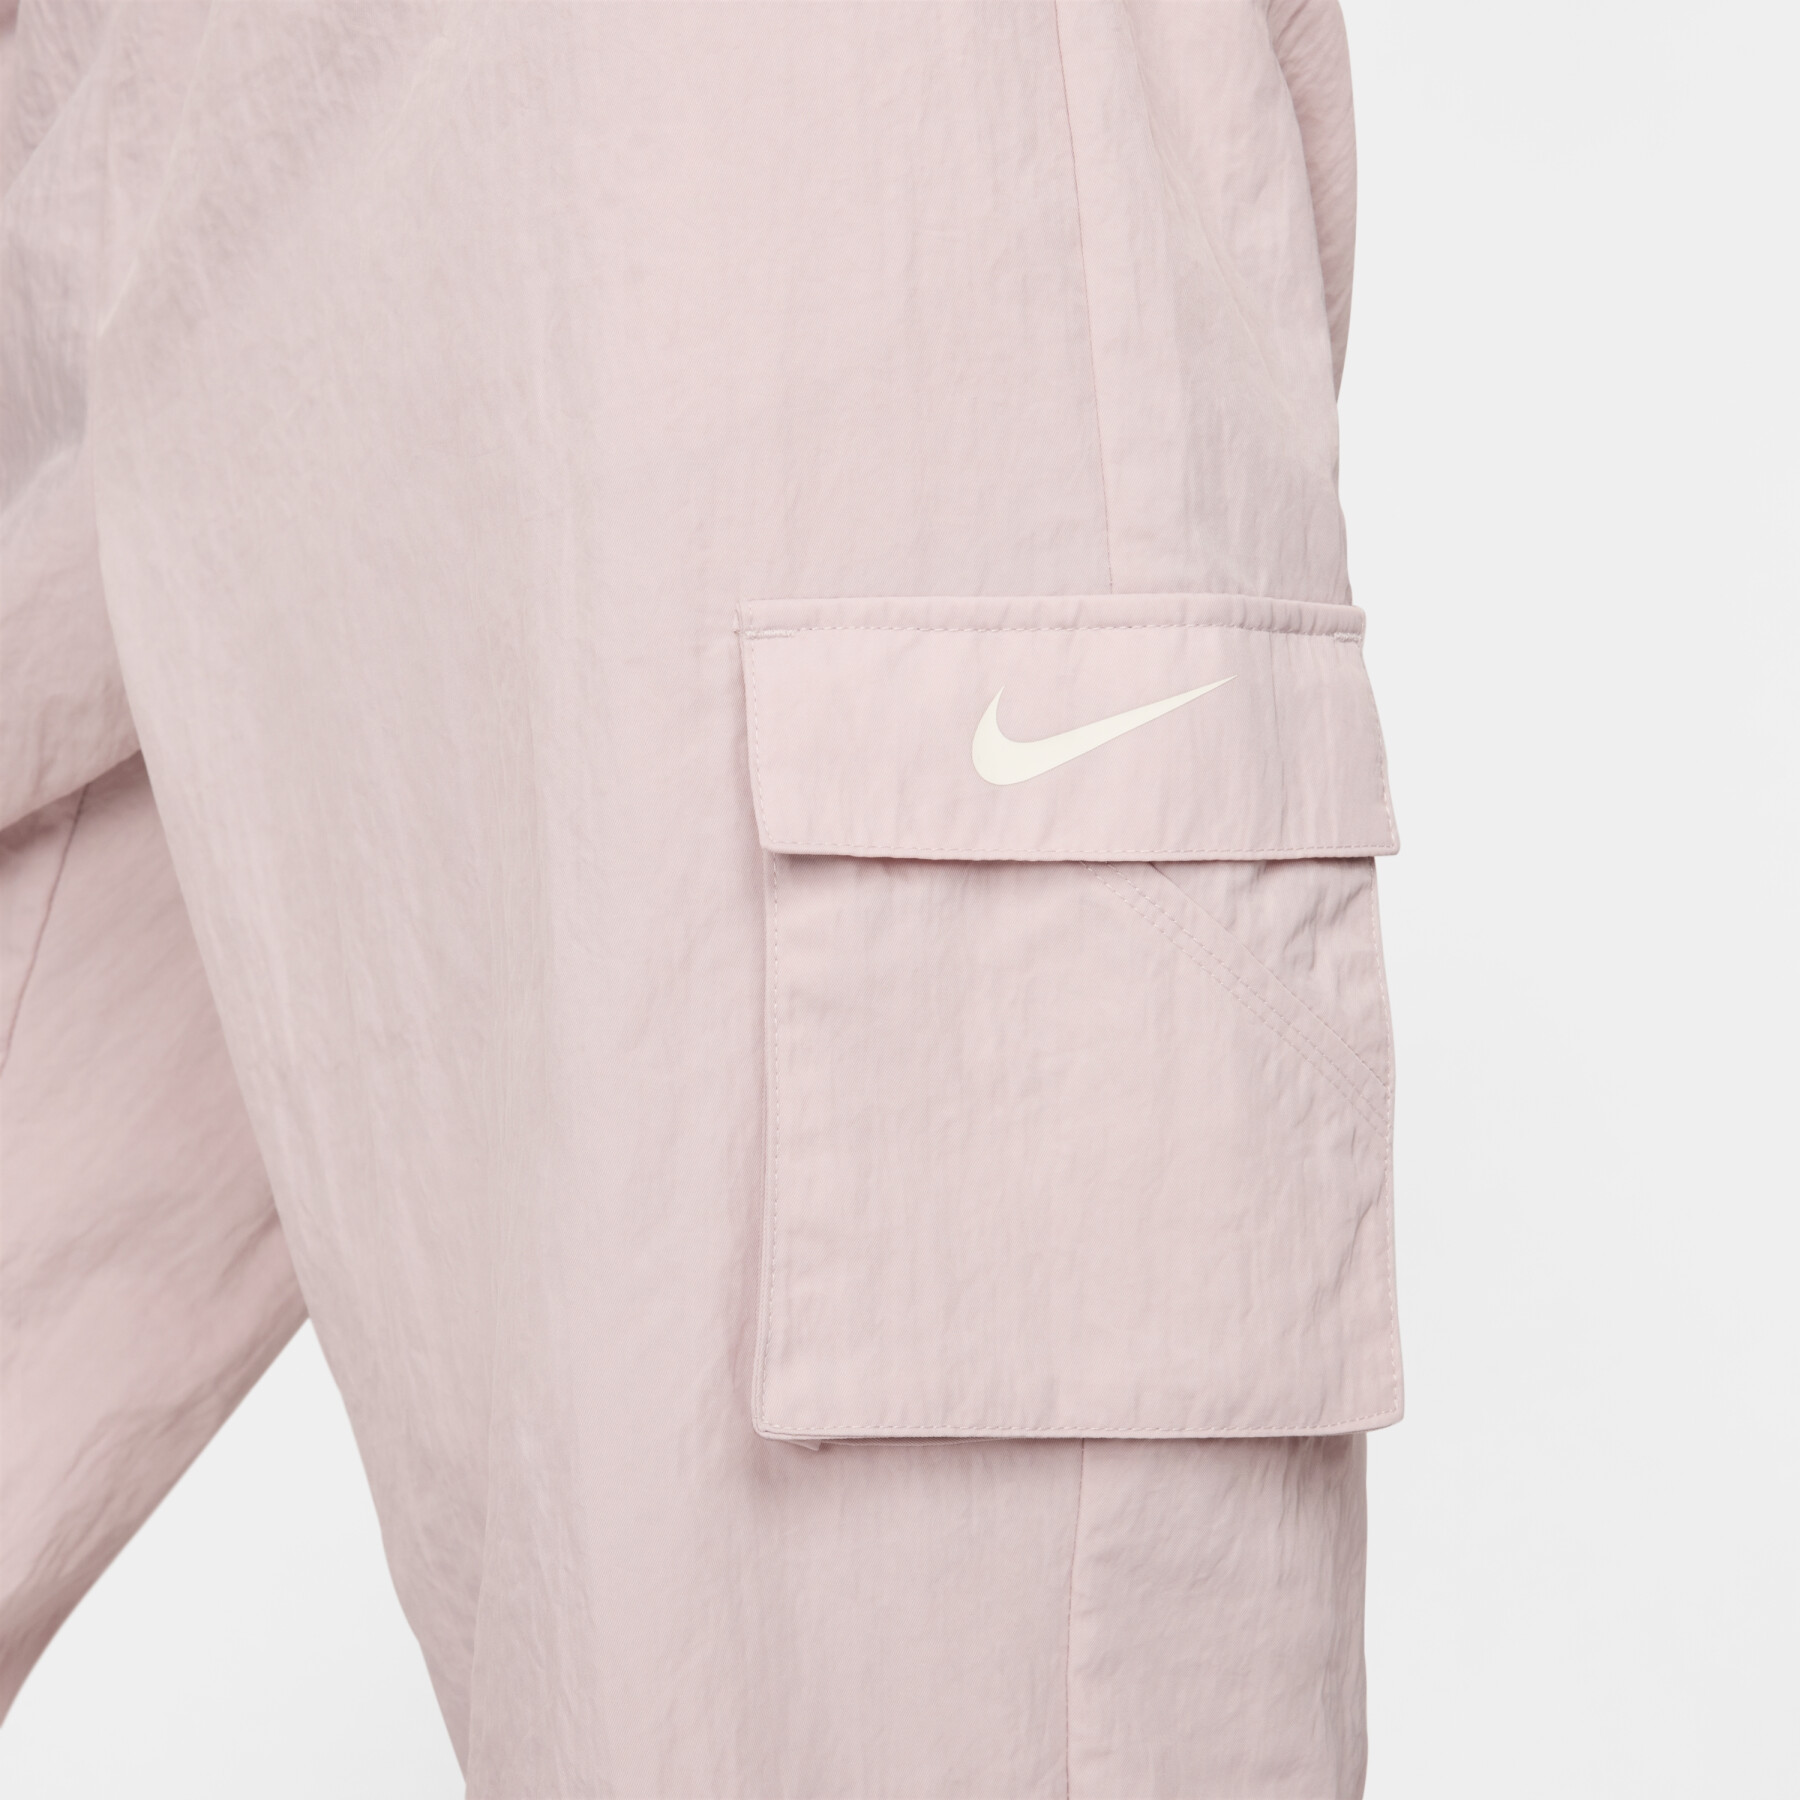 Women's cargo jogging suit Nike Essential